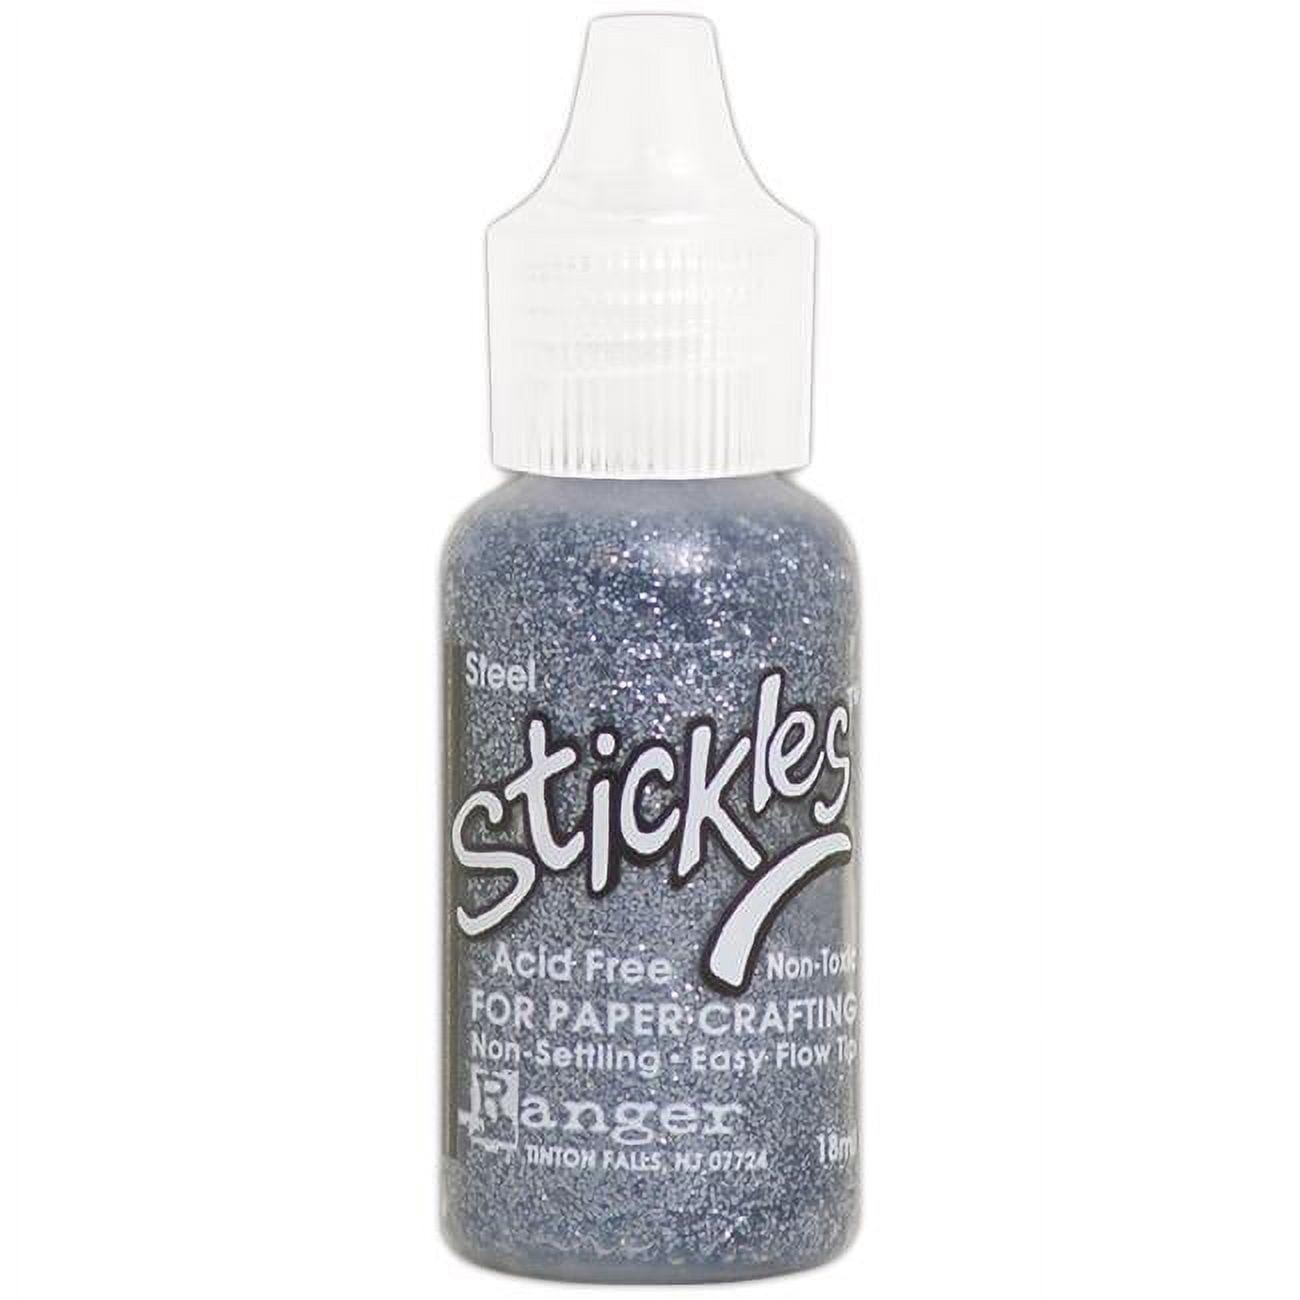 STEINEL G200C Clear Glue Sticks, 1 in. D x 12 in. L, 110049649 at